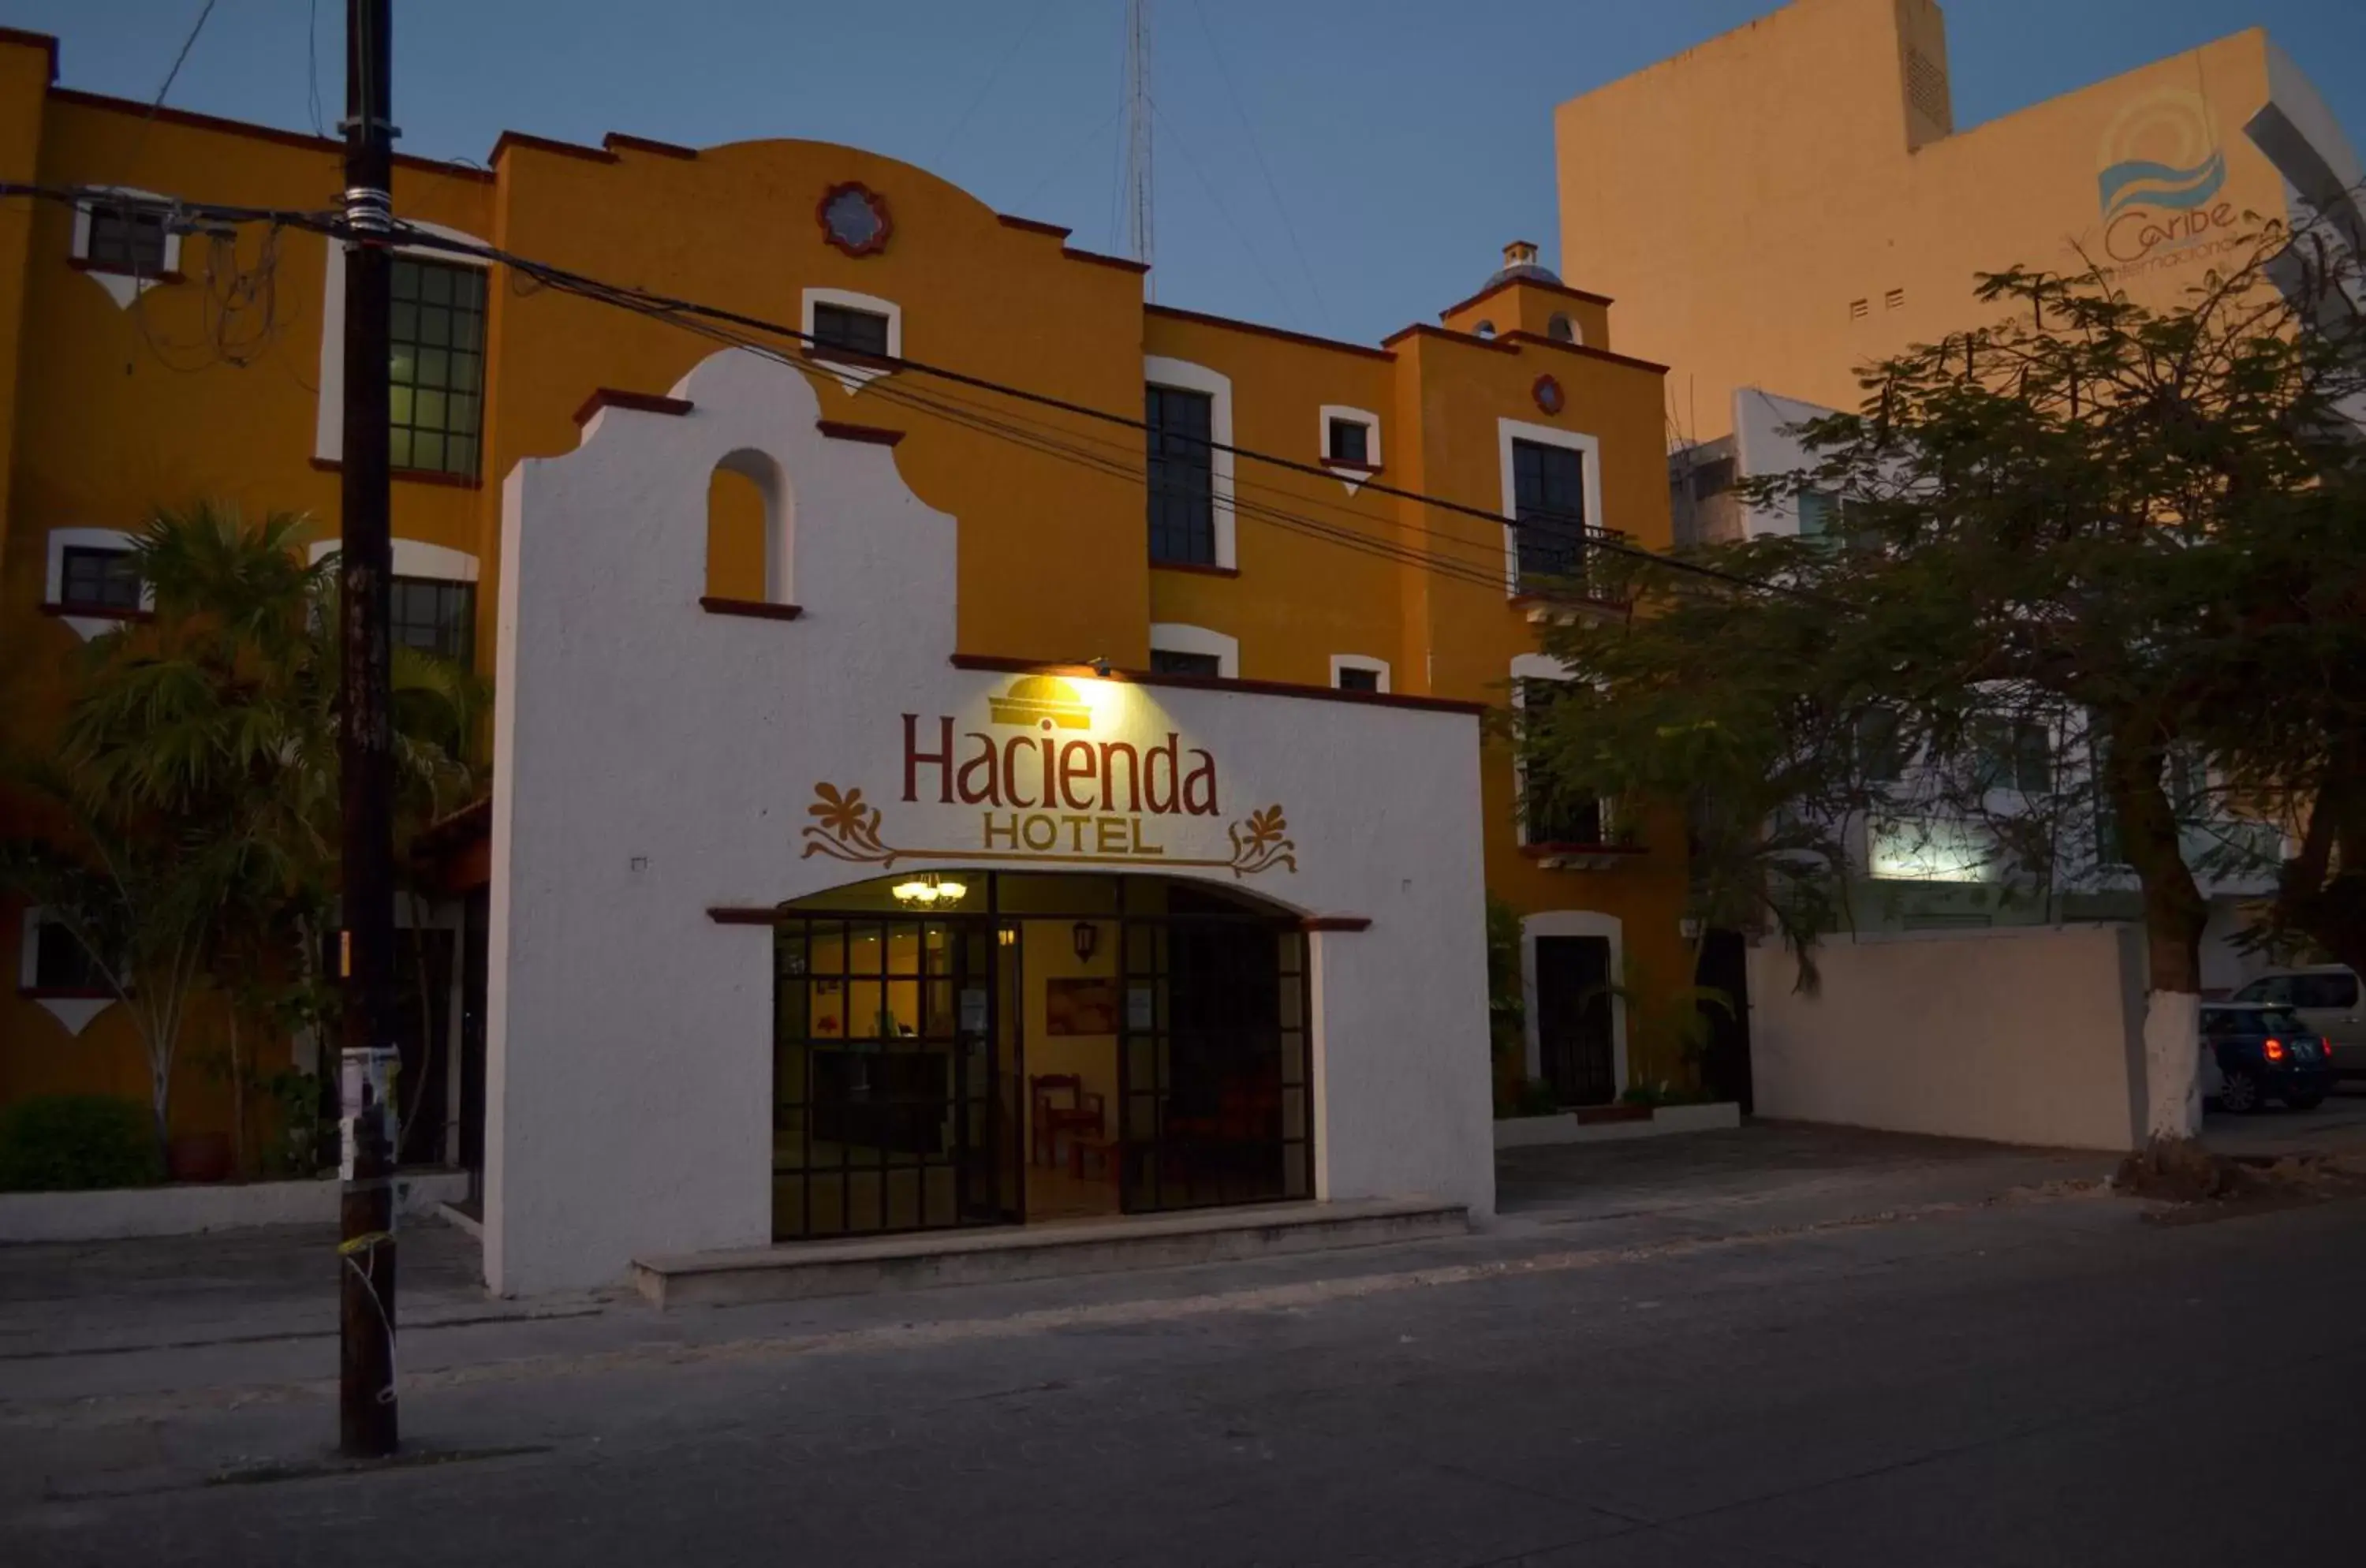 Facade/entrance, Property Building in Hotel Hacienda Cancun